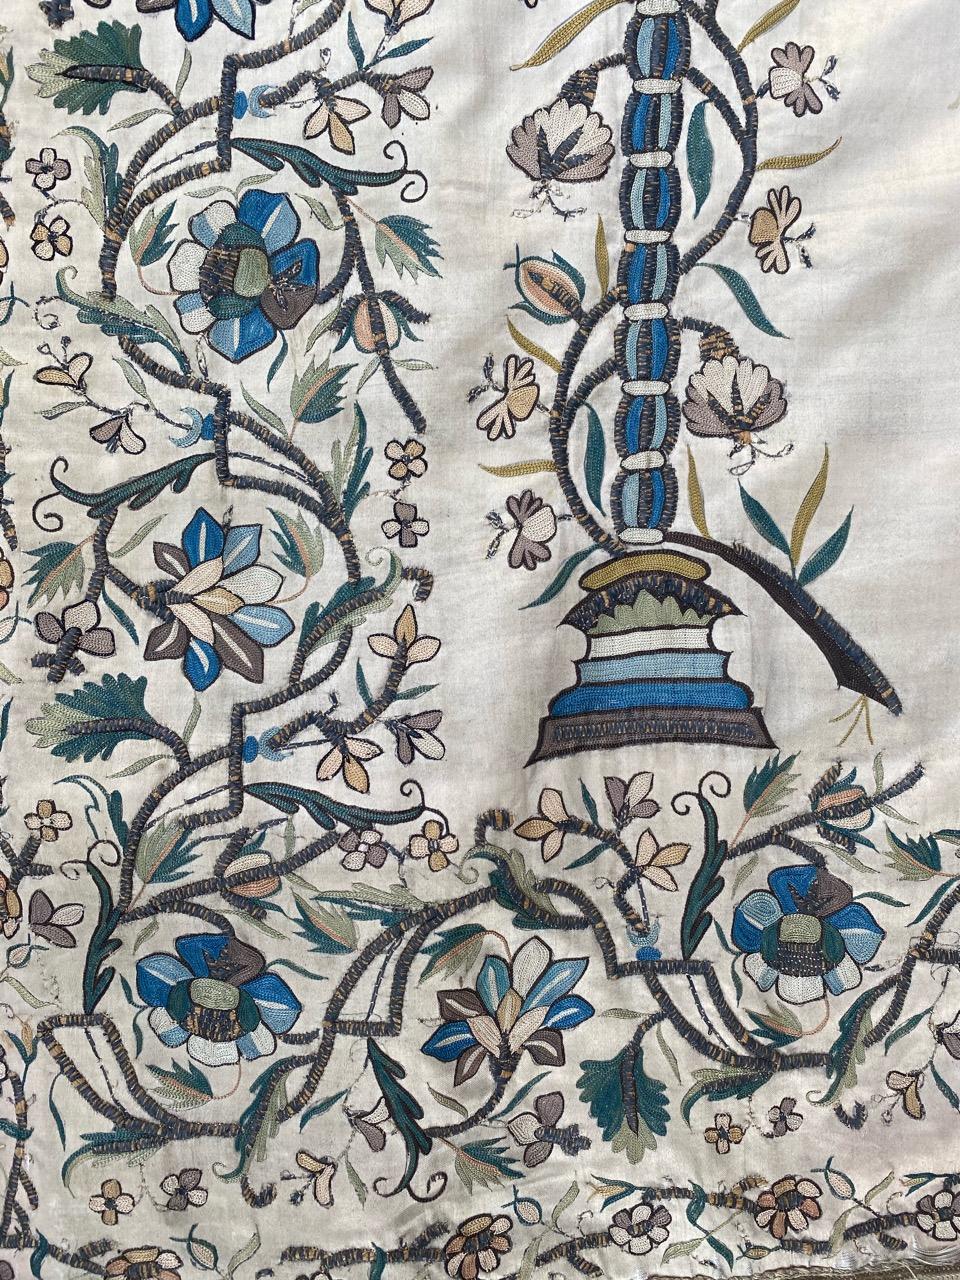 Schöne und sammelwürdige Ottomanenstickerei aus der Mitte des 19. Jahrhunderts mit schönem Blumenmuster und schönen natürlichen Farben, komplett handgestickt mit Seide und Metall auf Seidengrund.

✨✨✨
